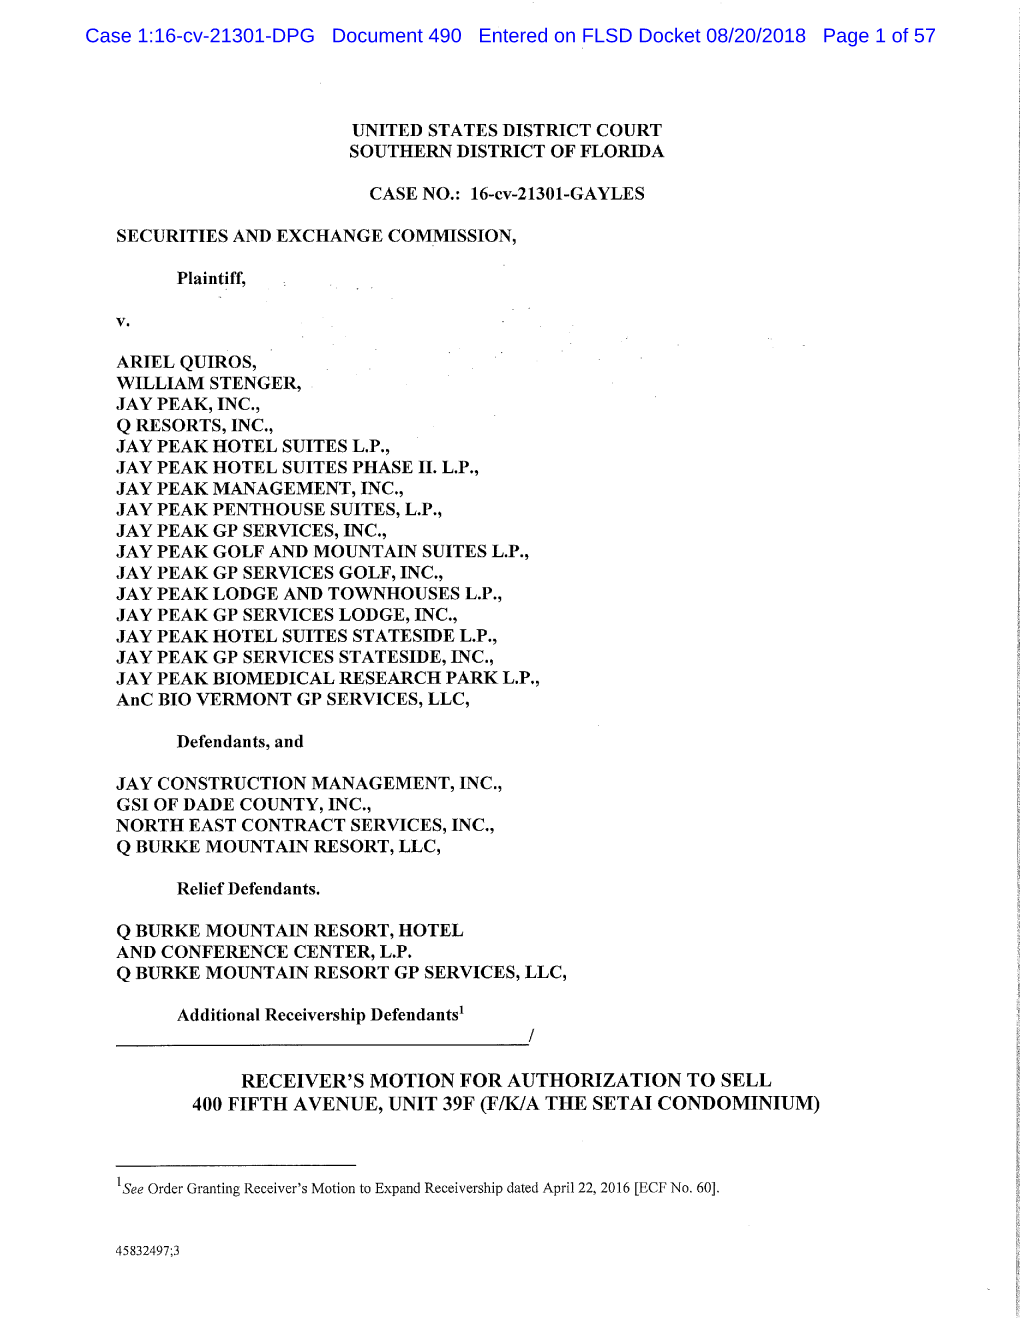 Case 1:16-Cv-21301-DPG Document 490 Entered on FLSD Docket 08/20/2018 Page 1 of 57